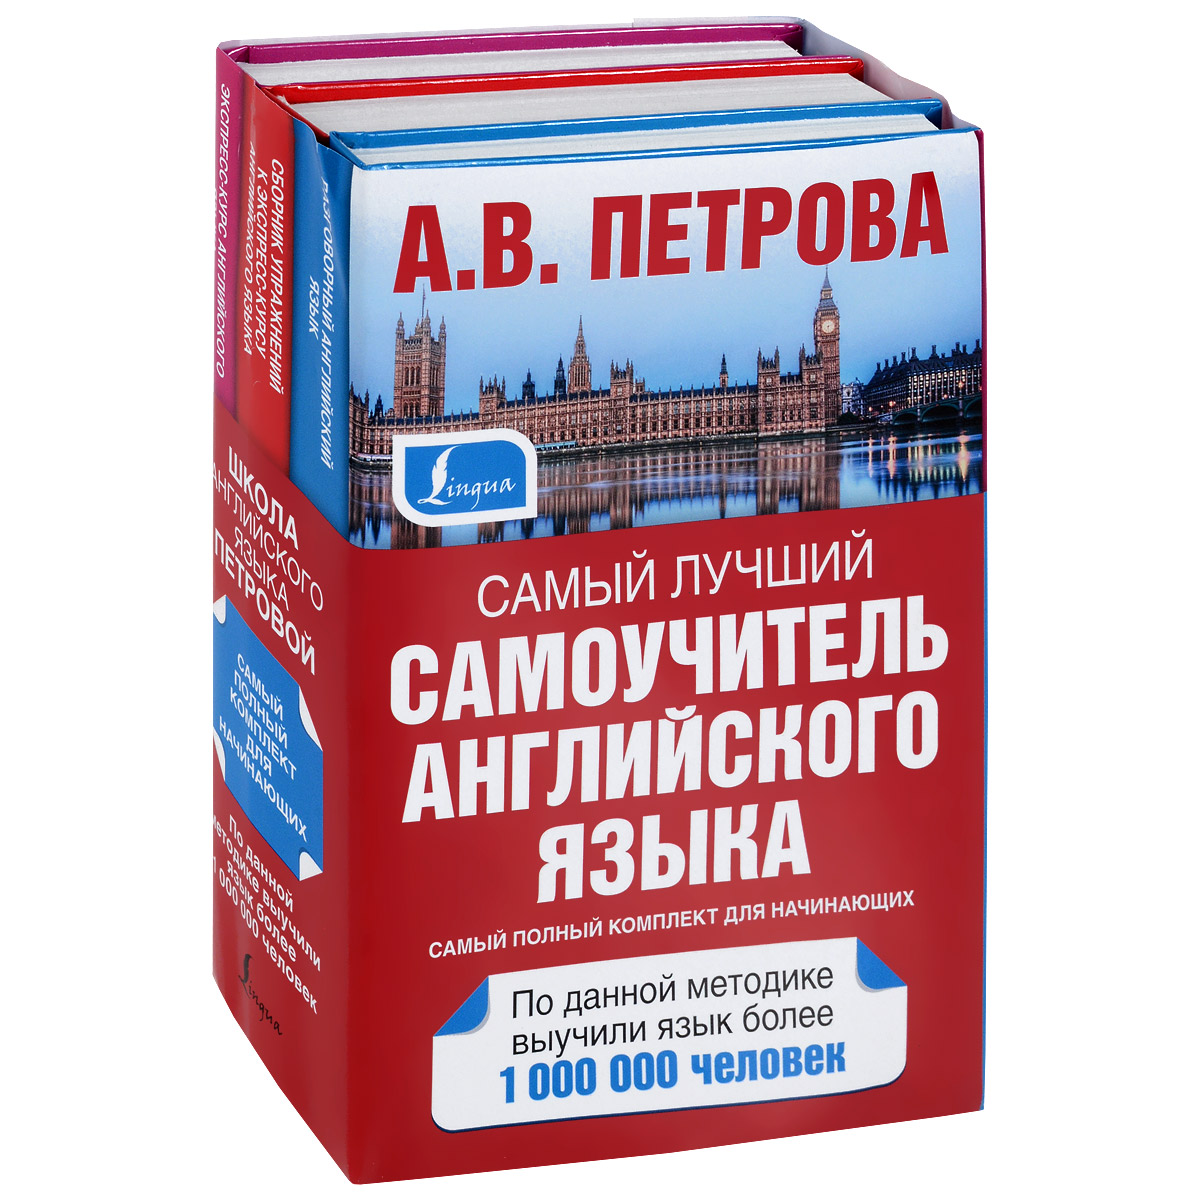 Где Купить Английские Книги В Москве